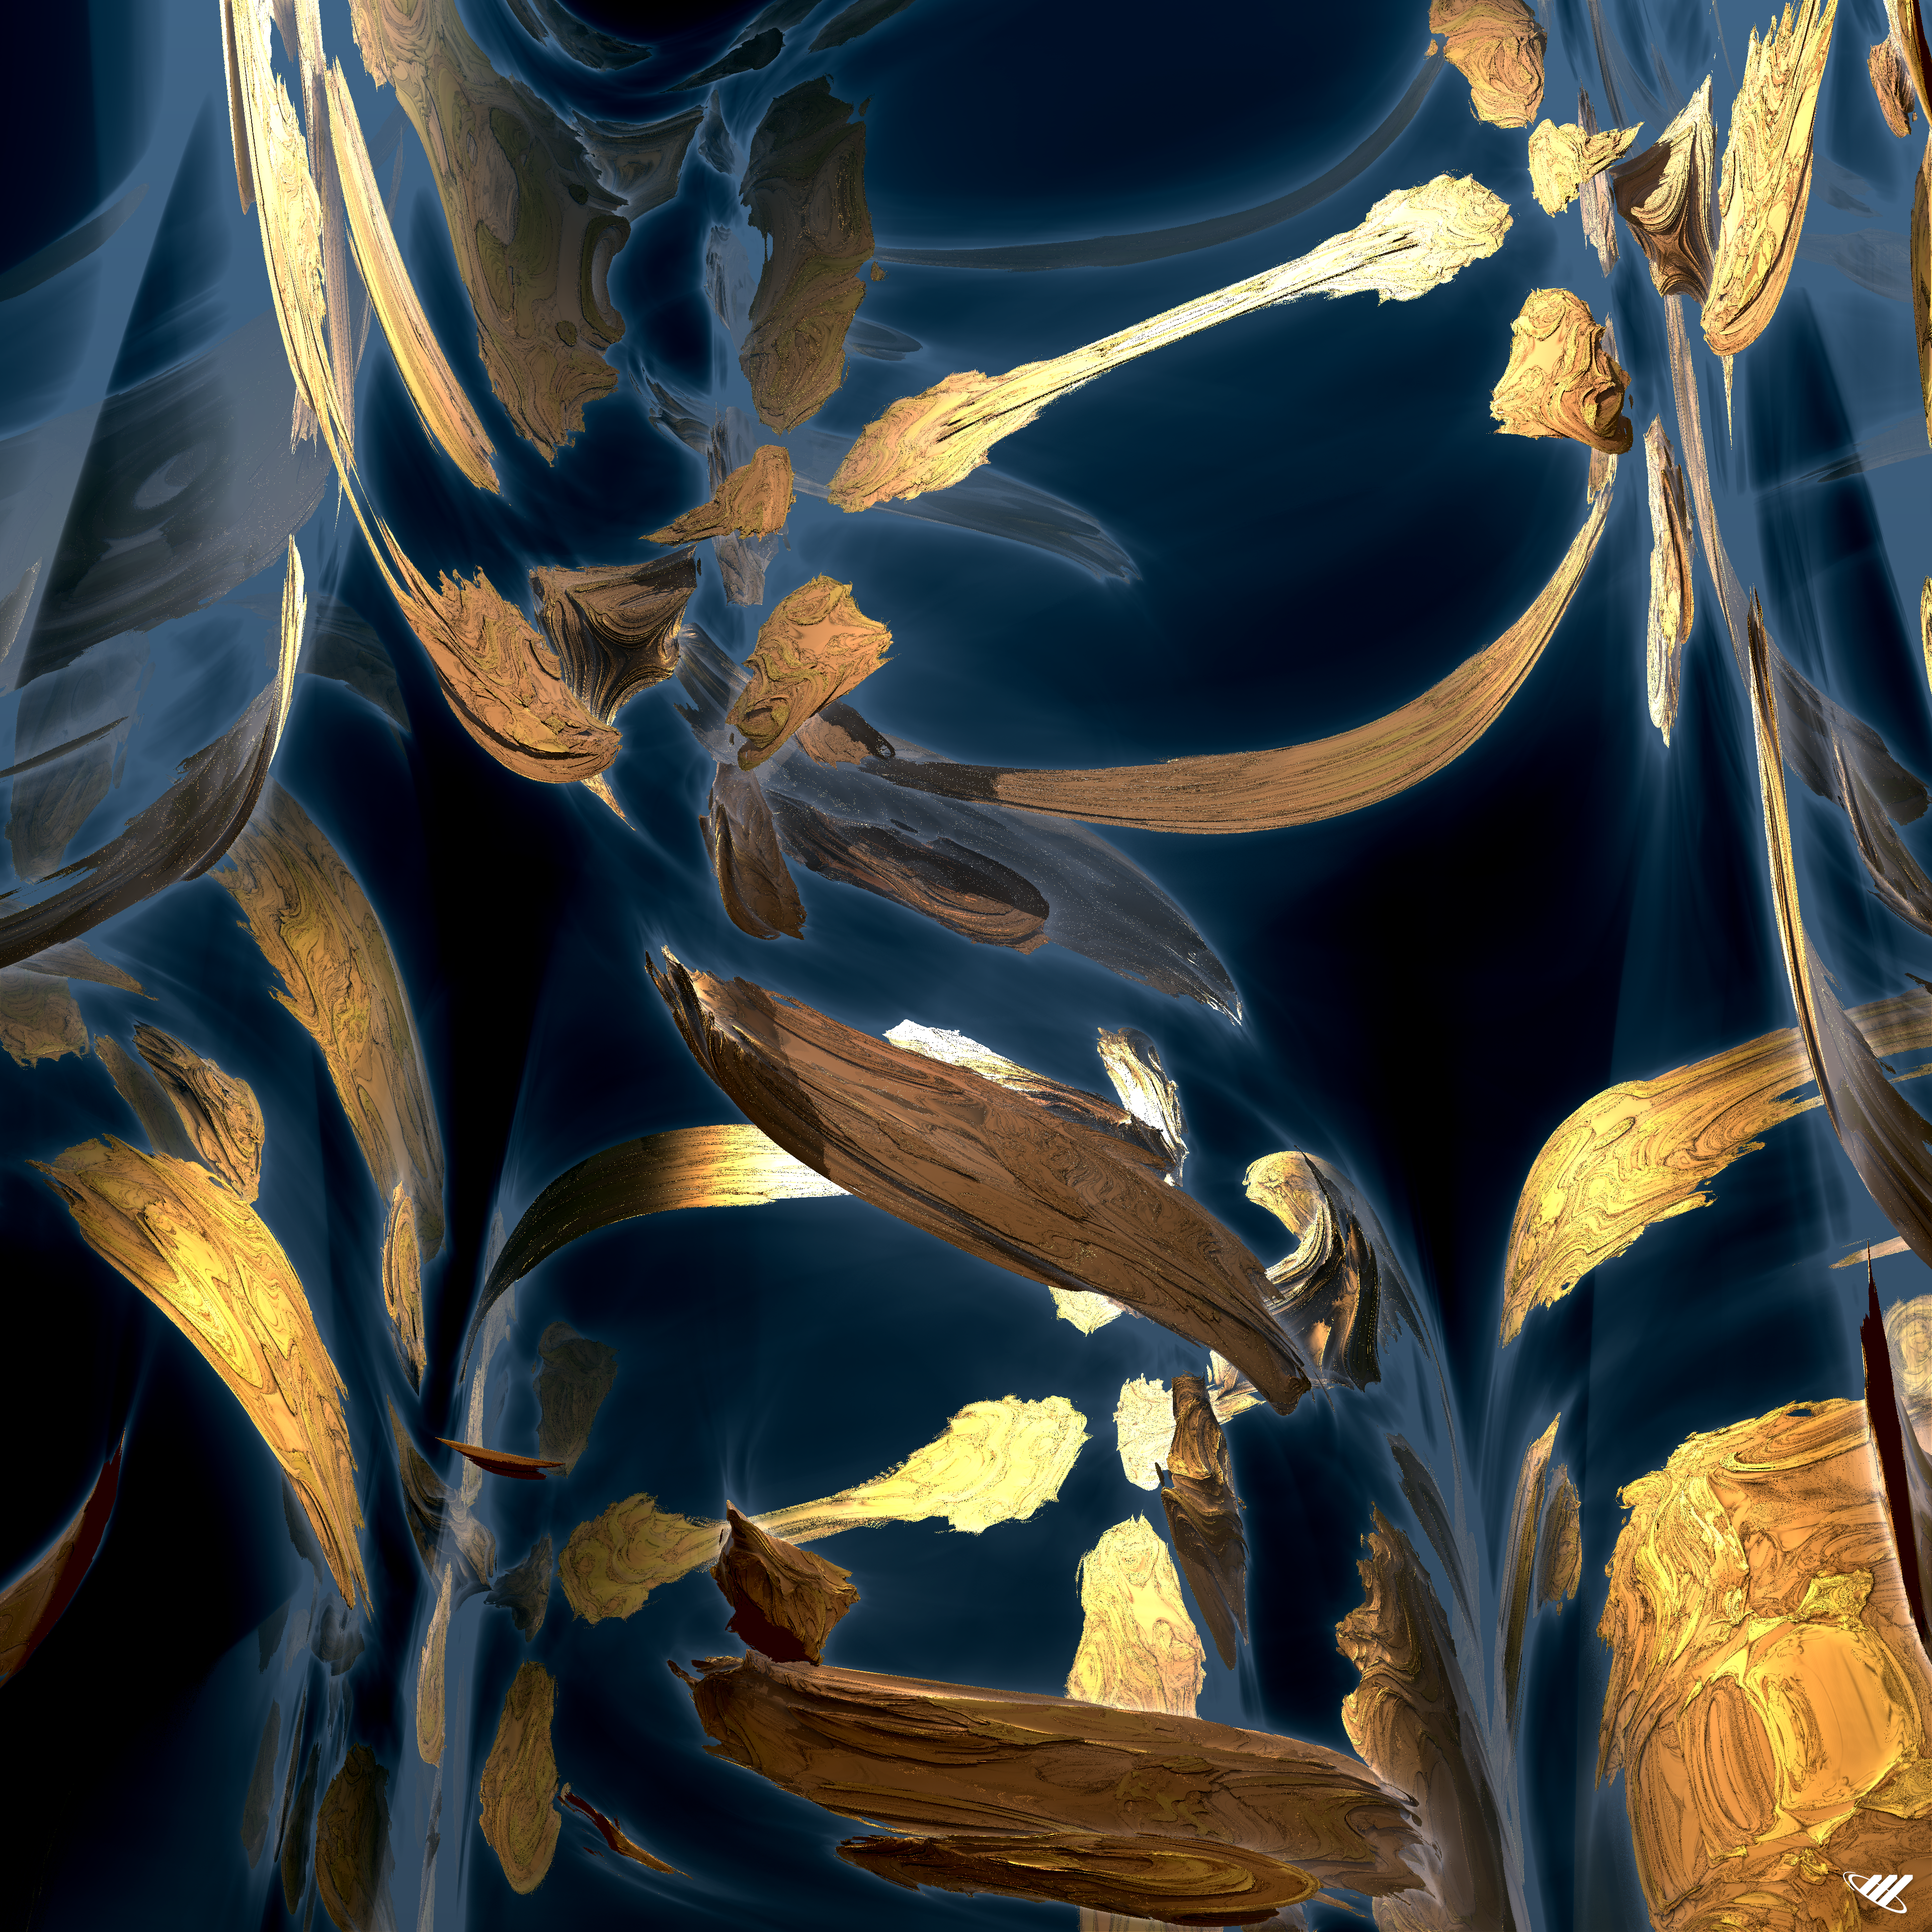 Gold Leaf suspended in water fractal render.